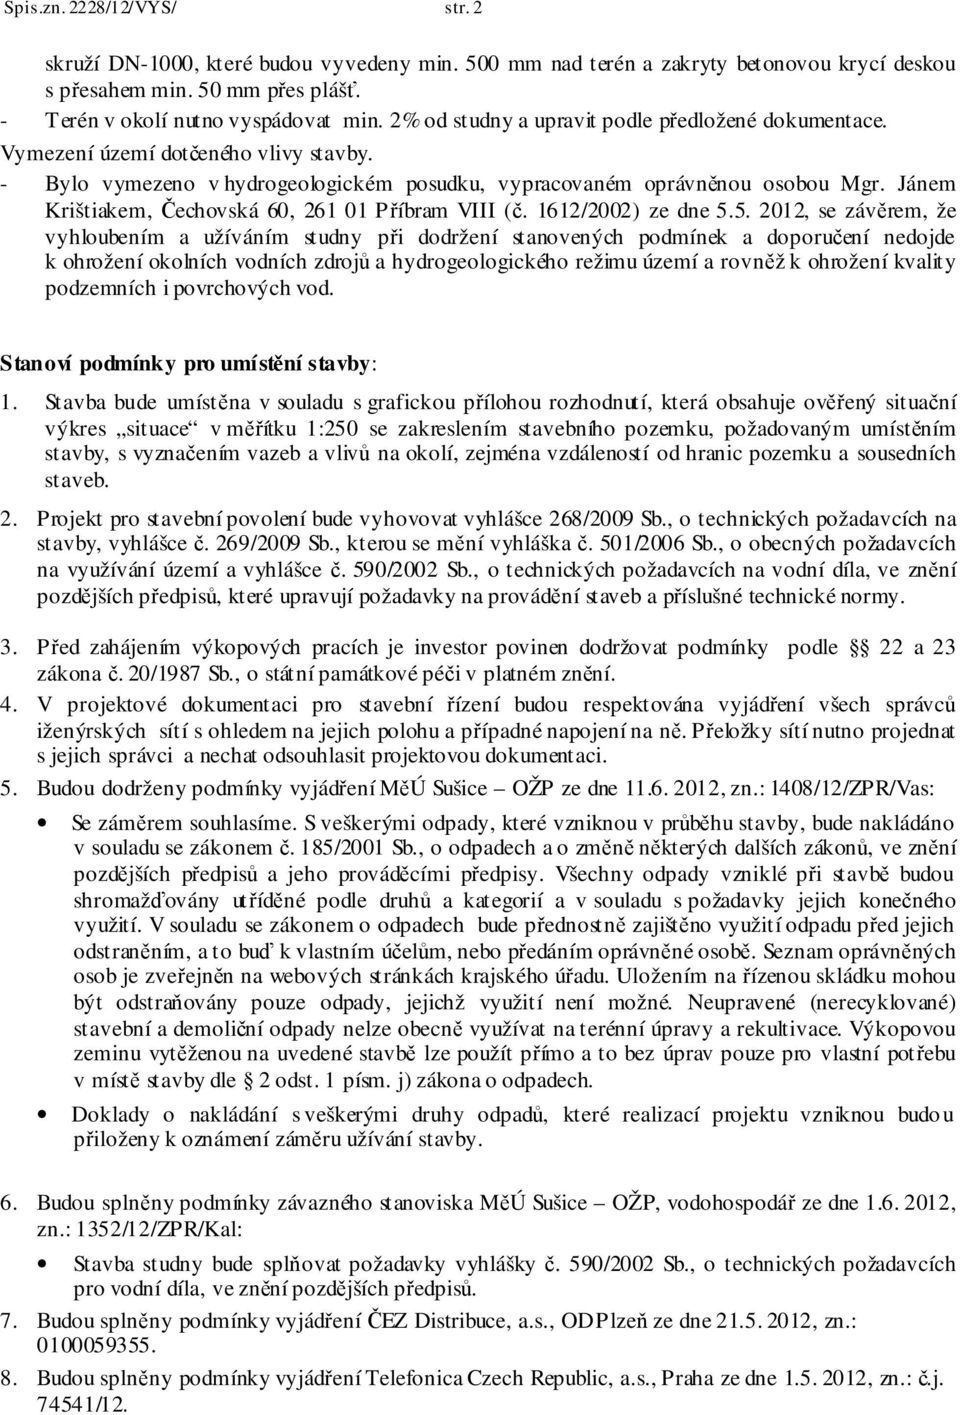 Jánem Krištiakem, Čechovská 60, 261 01 Příbram VIII (č. 1612/2002) ze dne 5.